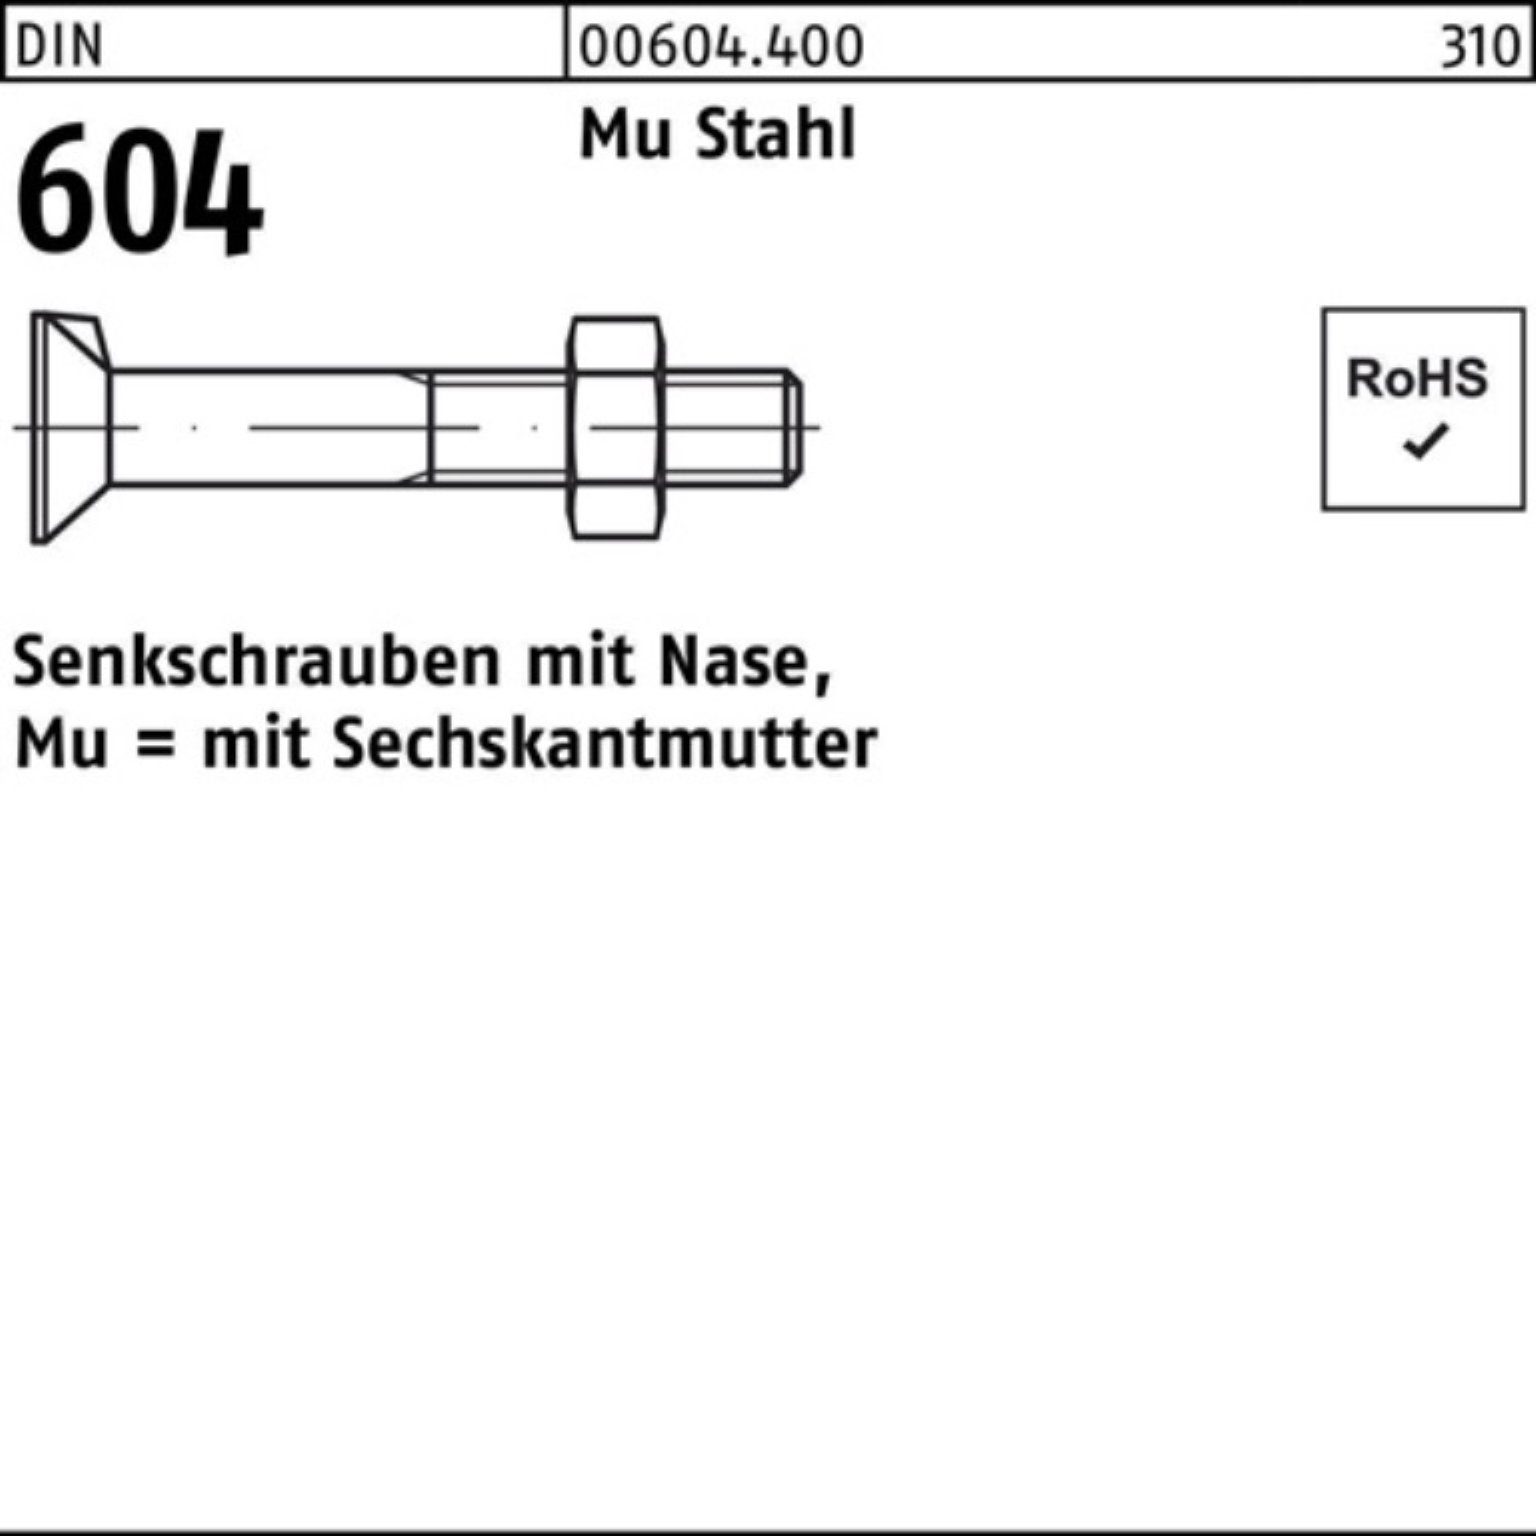 Reyher Senkschraube 100er Senkschraube M24x 65 604 Nase/6-ktmutter 2 Stahl 4.6 Pack Mu DIN